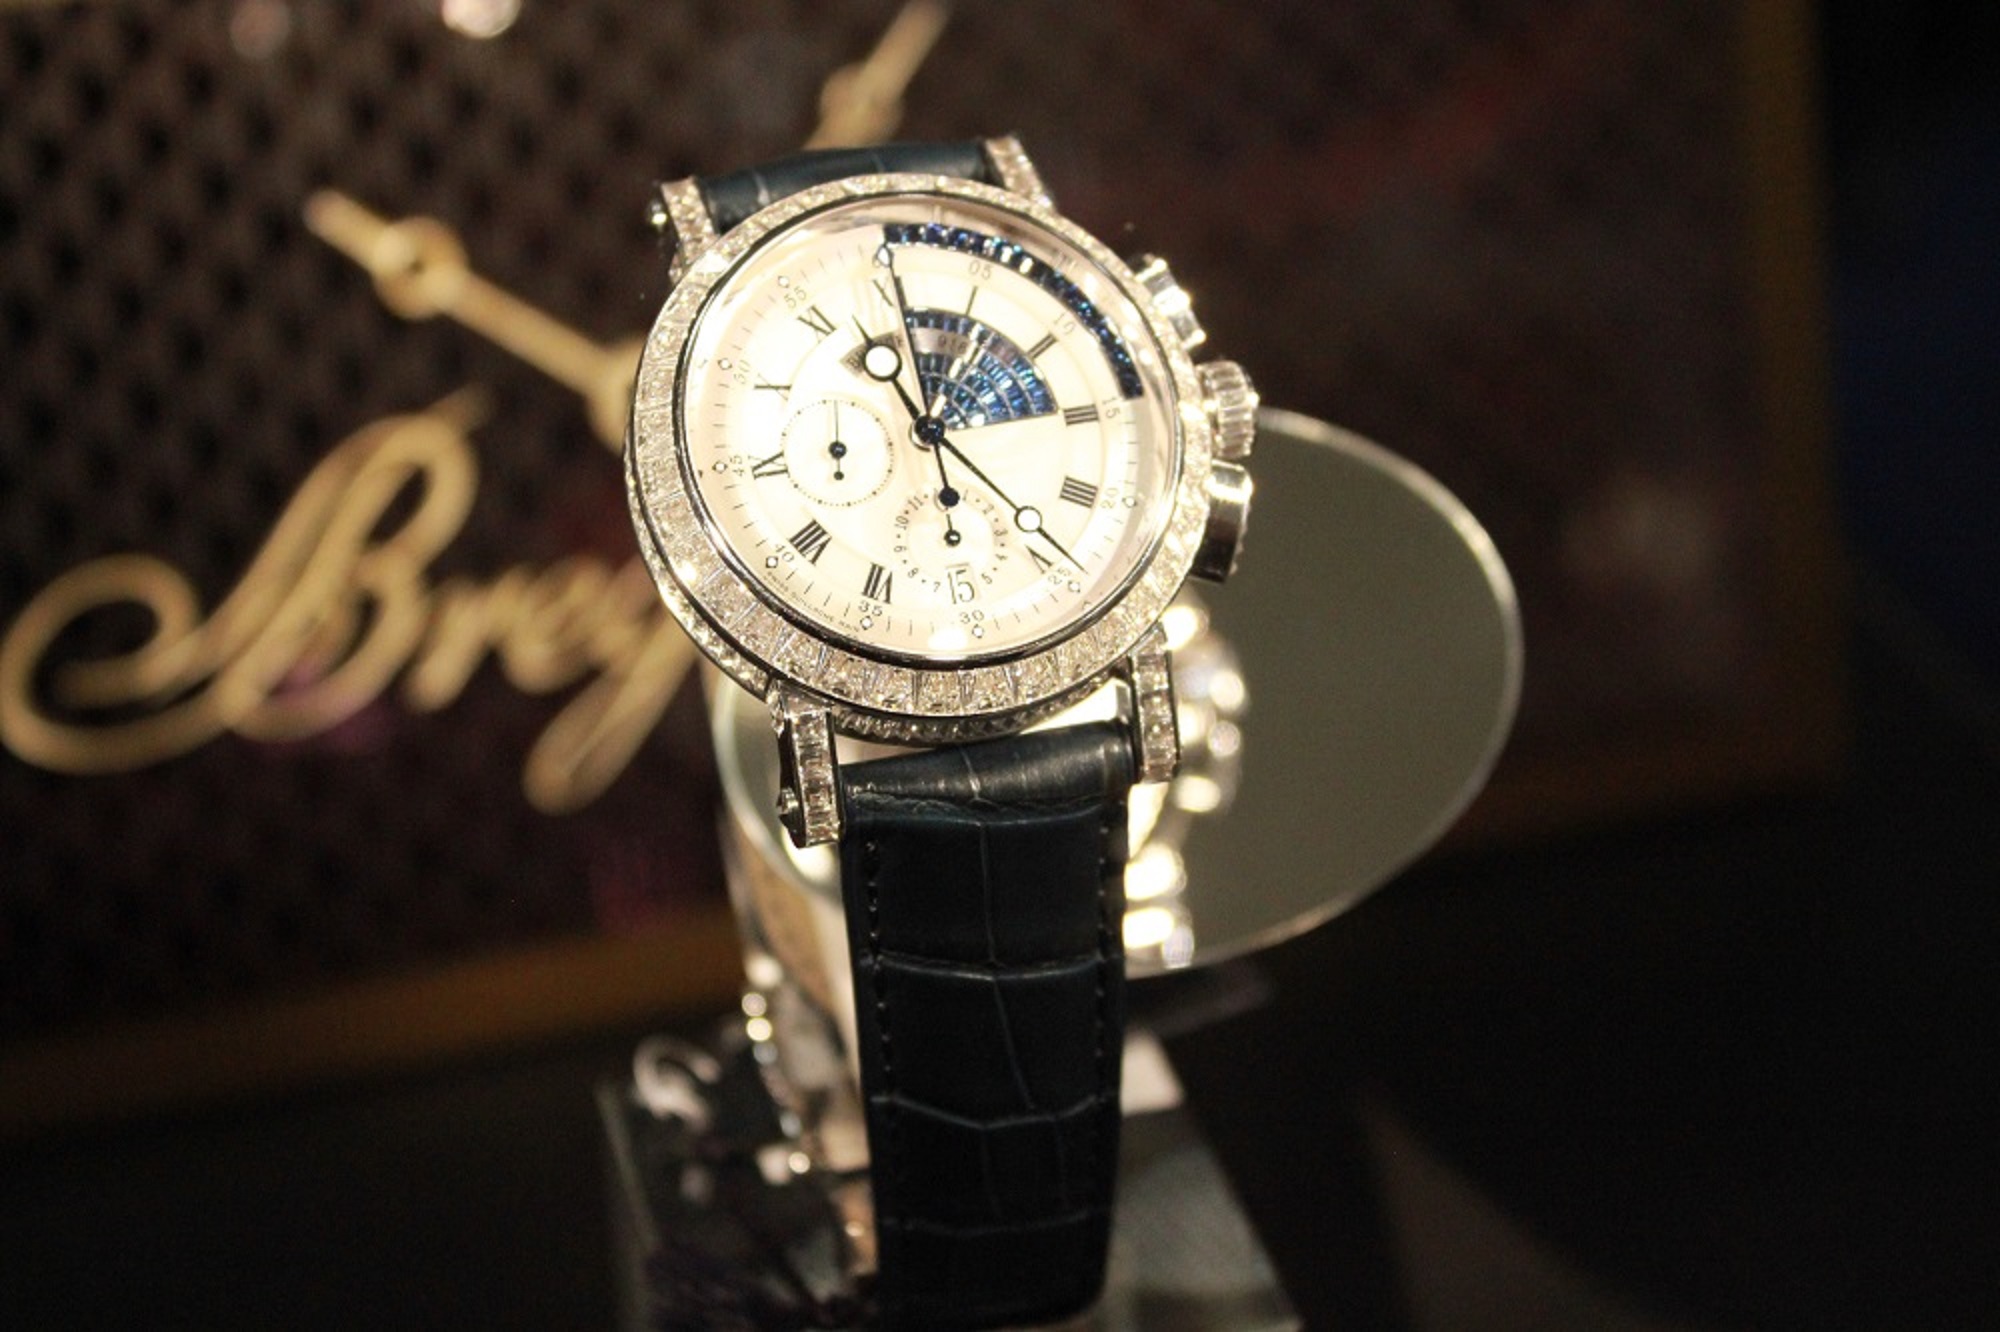 松坂屋にて、時計の一流ブランドが勢揃い!